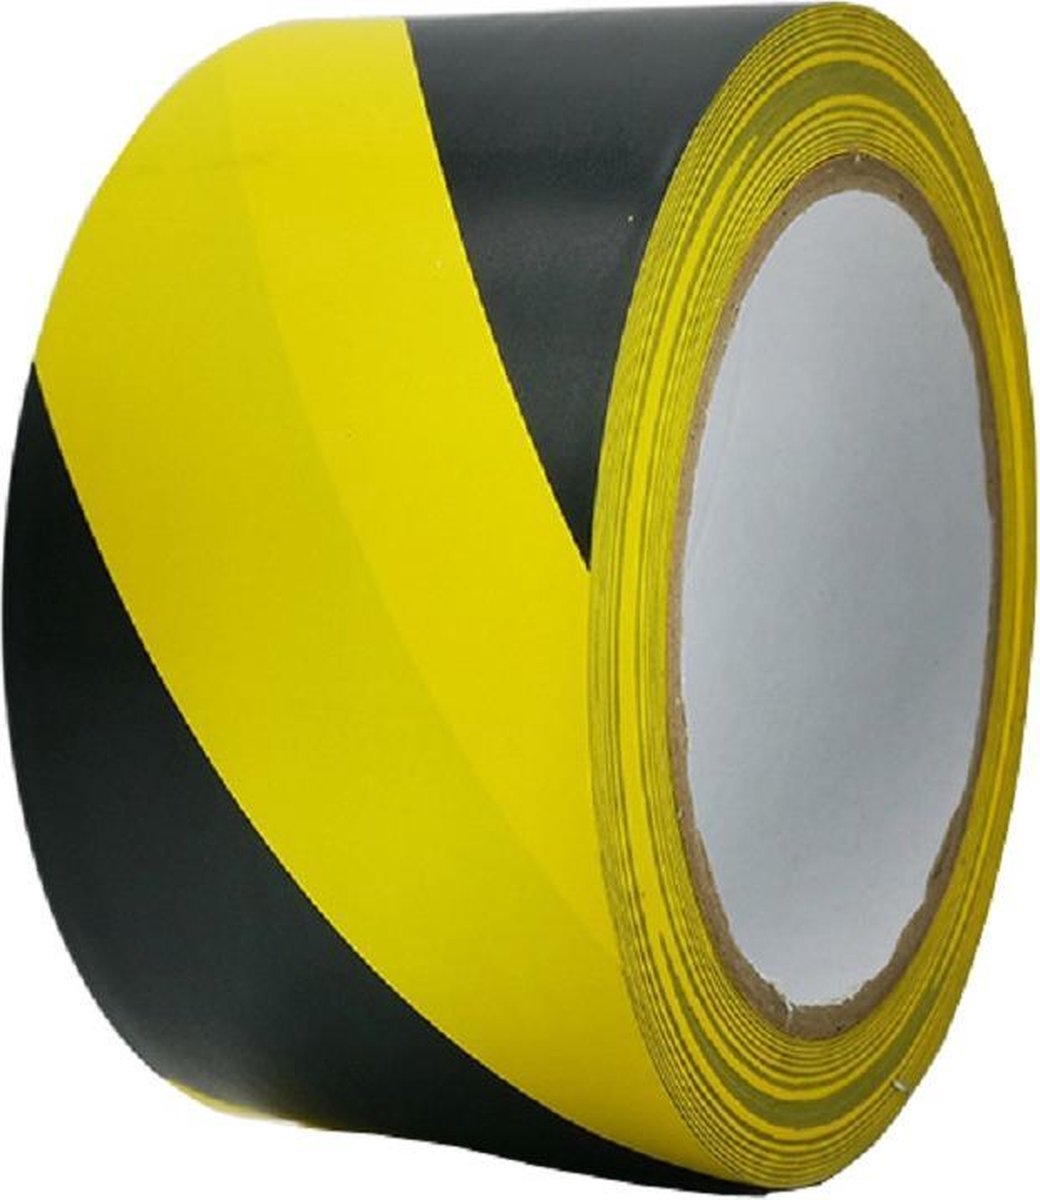 Markeringstape voor vloer geel-zwart - Merkloos